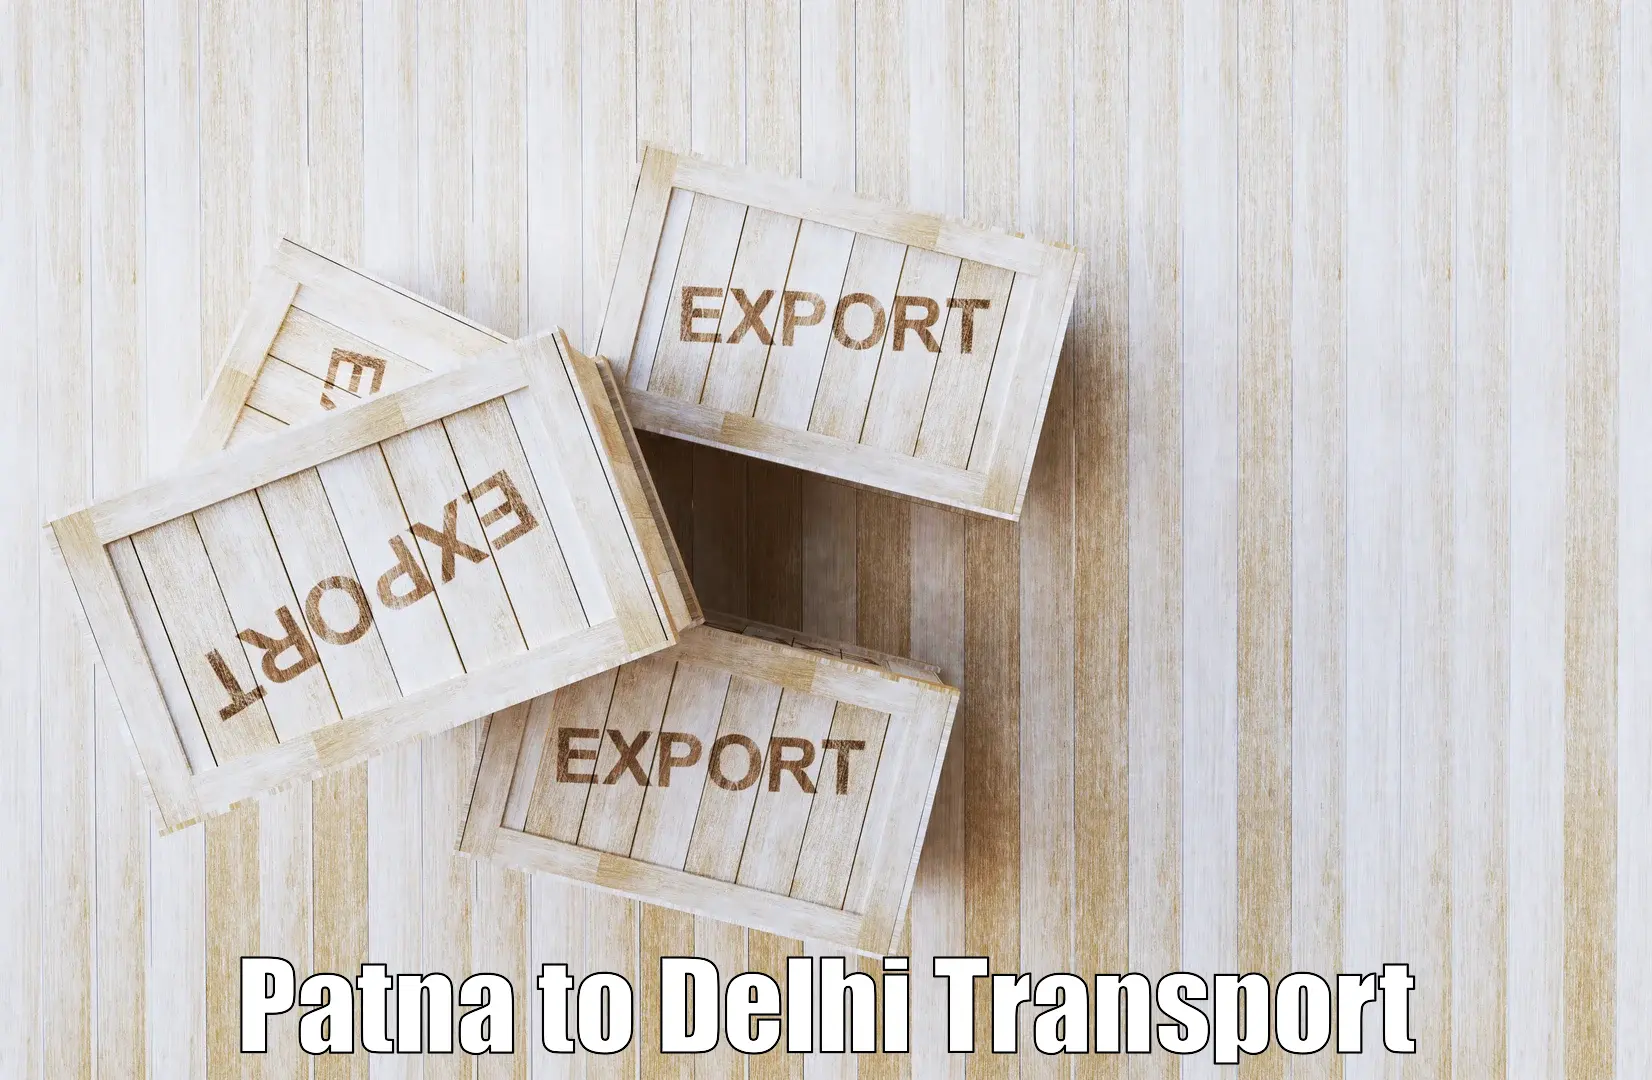 Nearest transport service Patna to University of Delhi